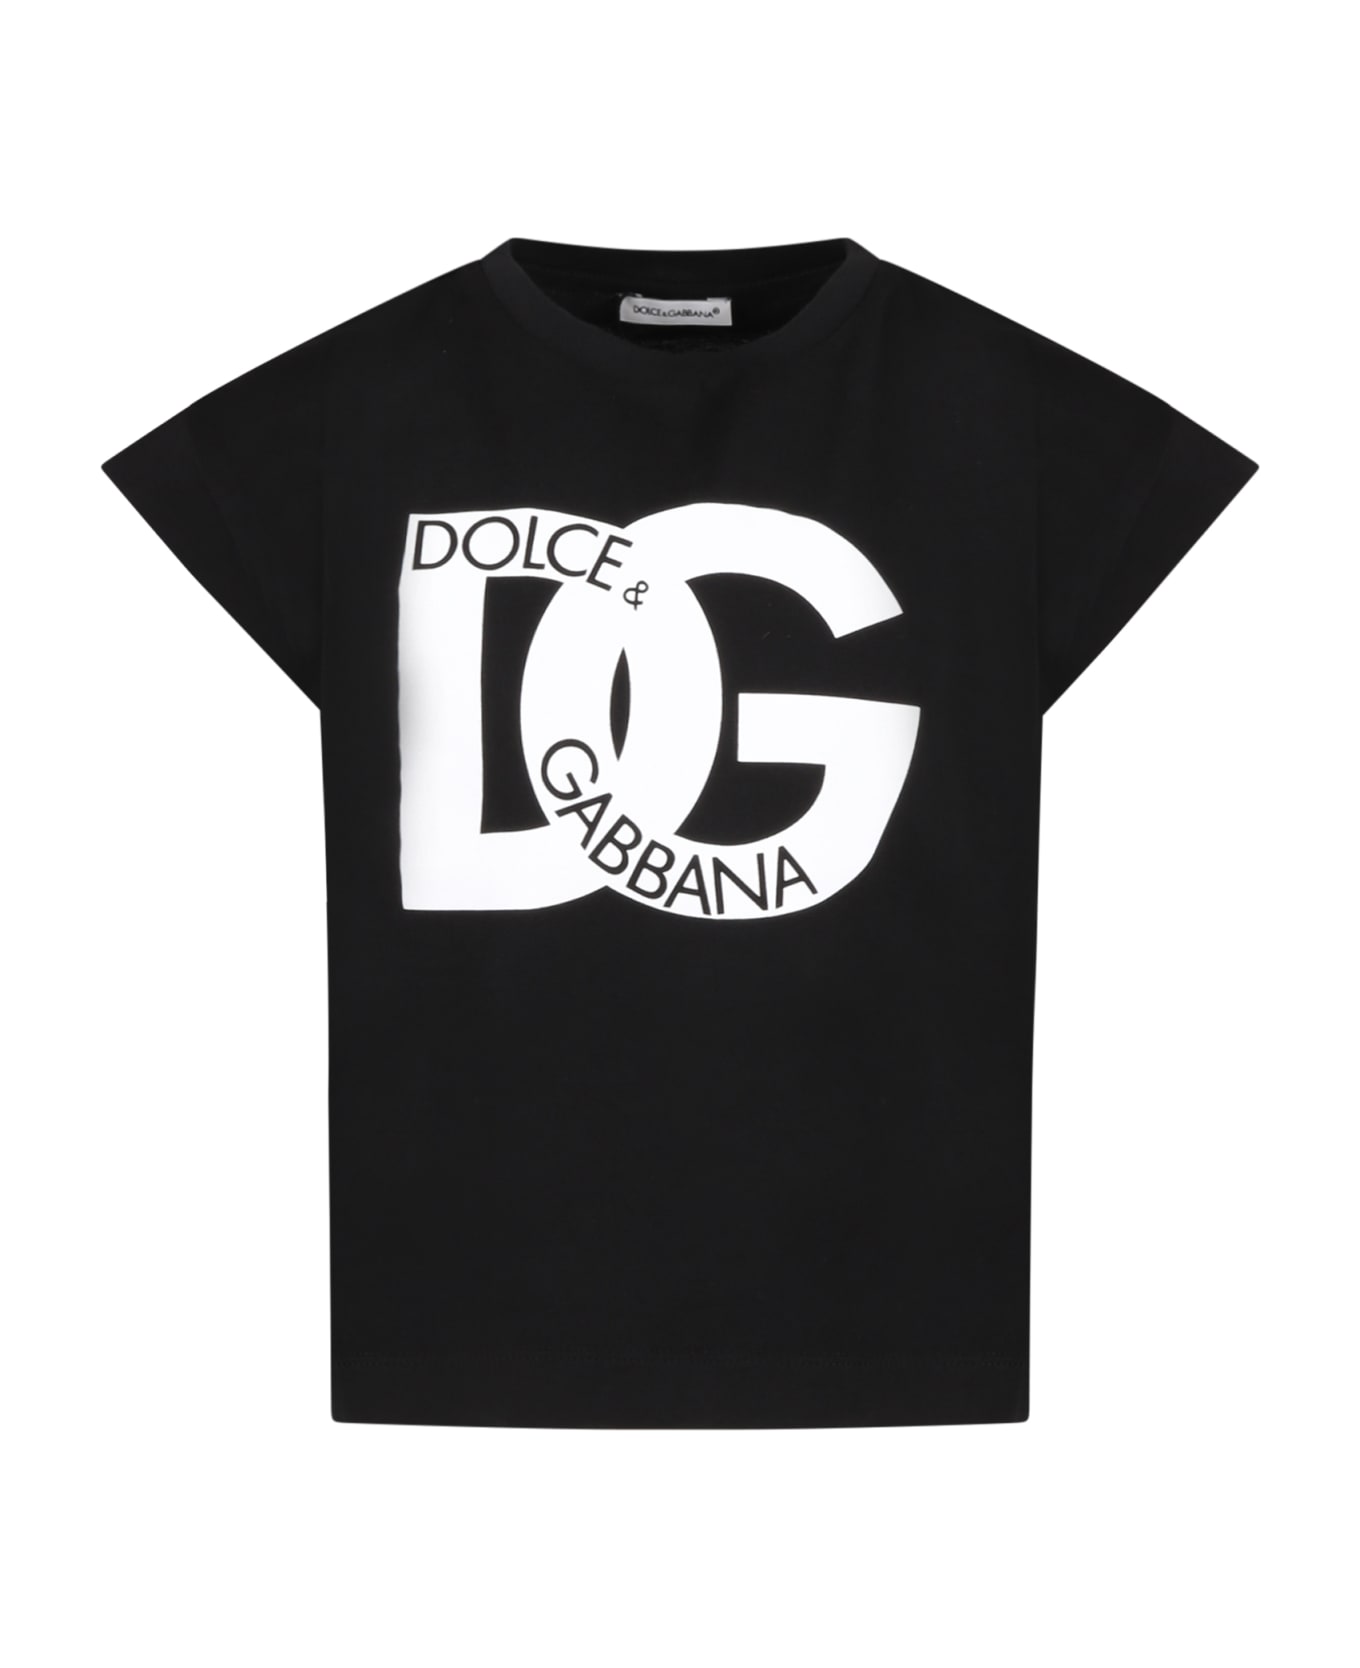 Dolce & Gabbana Black T-shirt For Girl With White Logo - Black